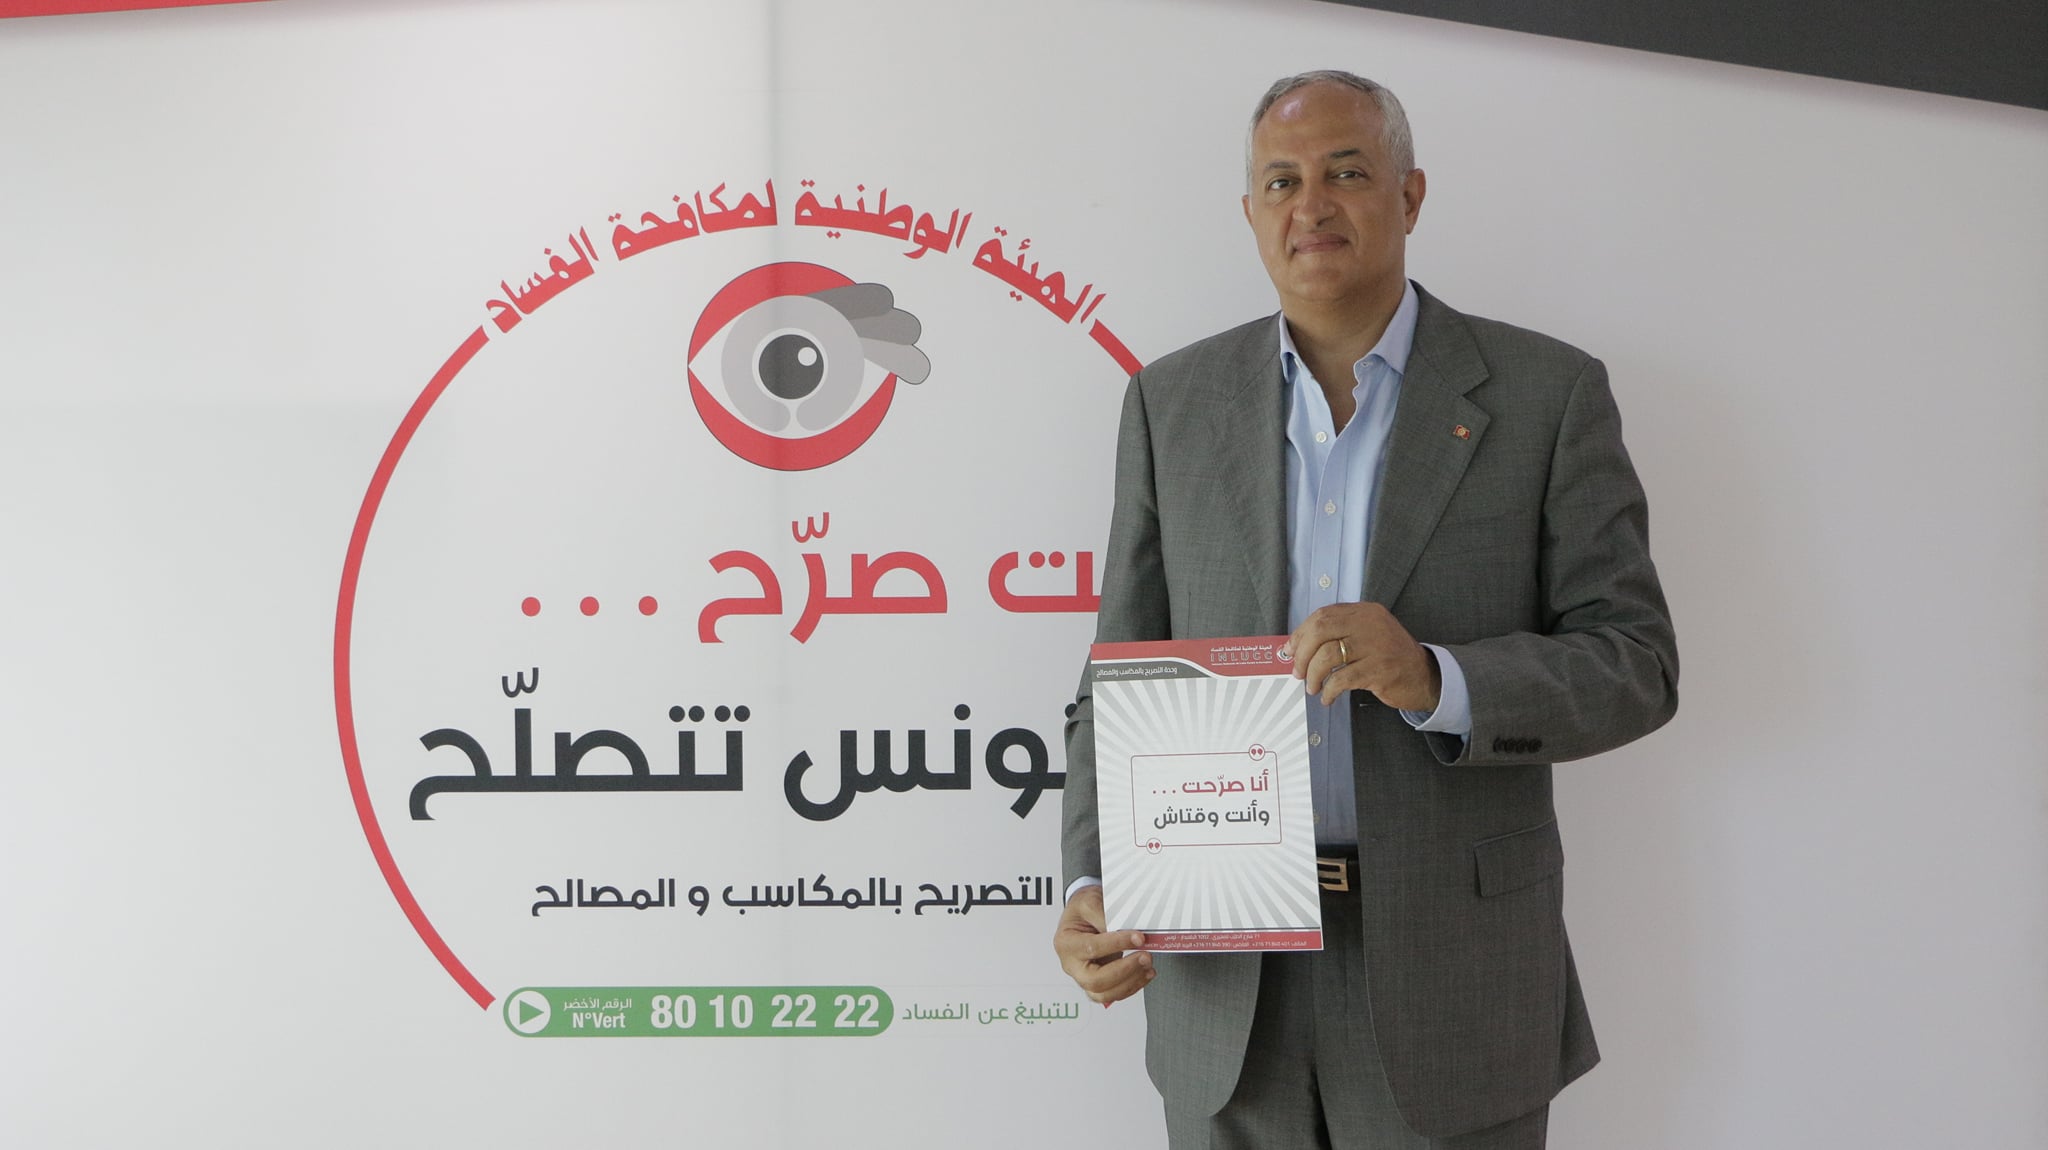 Tunisie: Mohamed Fadhel Kraiem déclare ses biens auprès de l’INLUCC